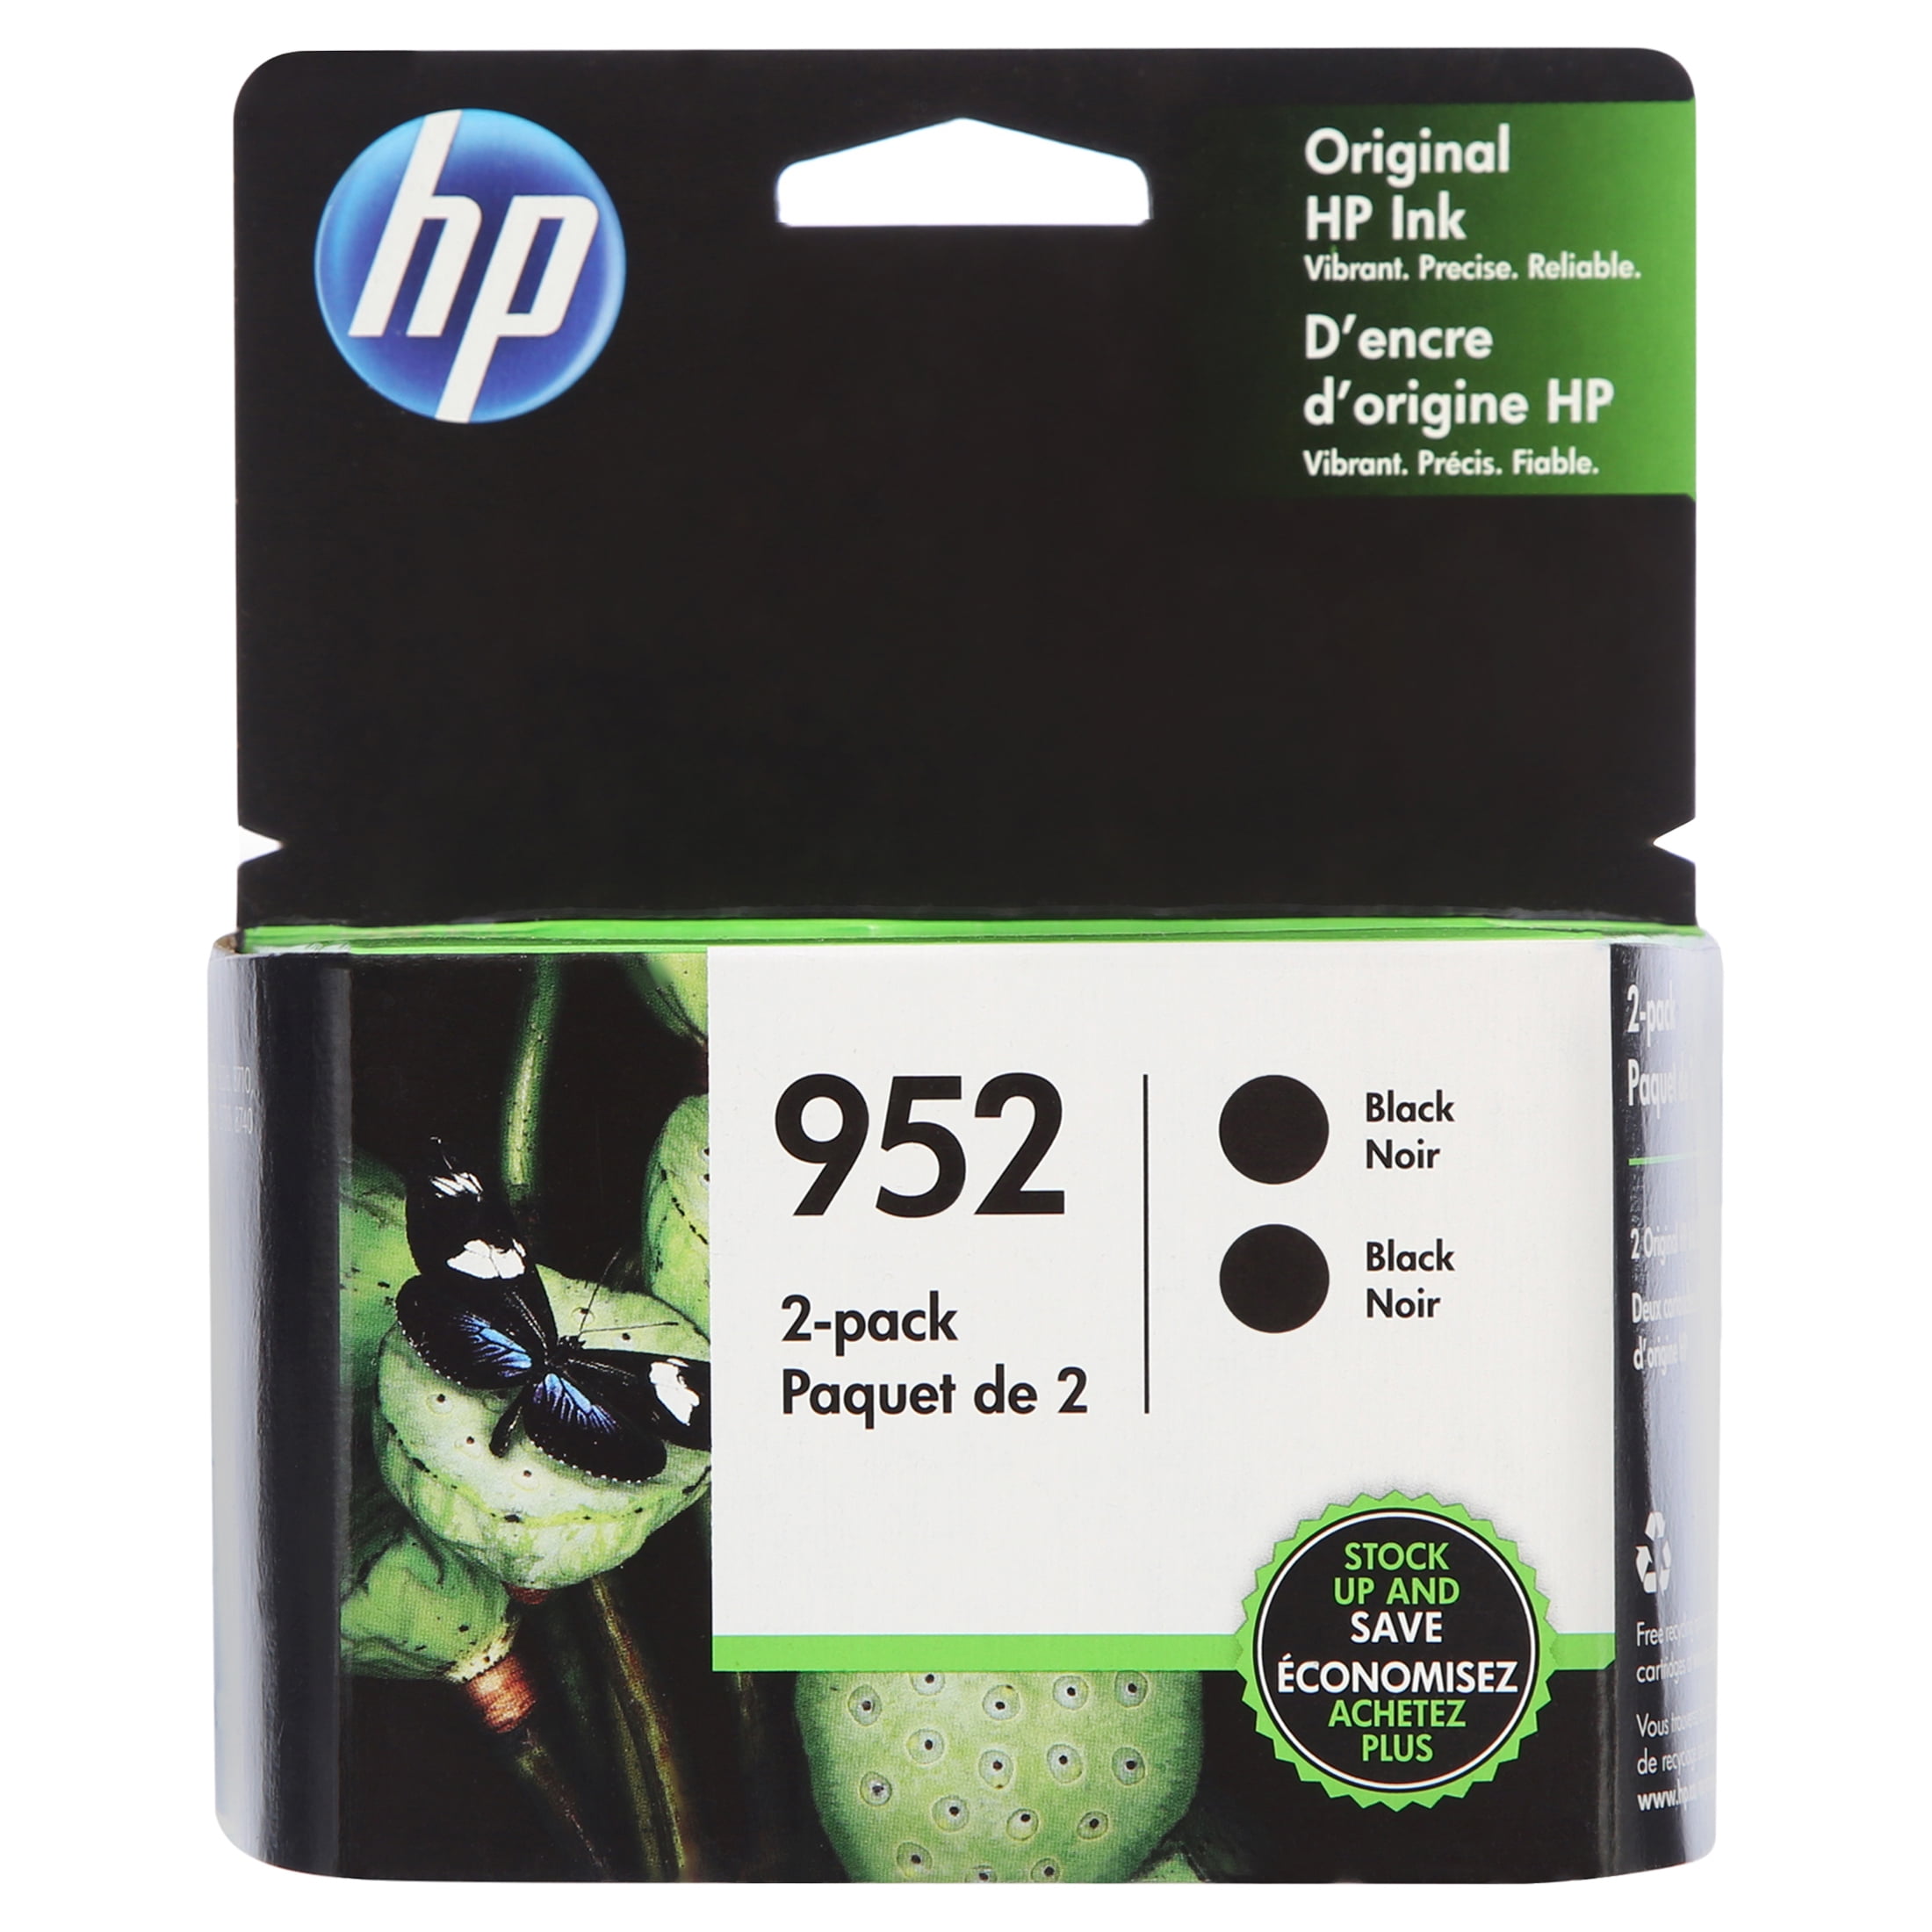 HP 953 XL cartouche d'encre magenta pour HP OfficeJet Pro 7720